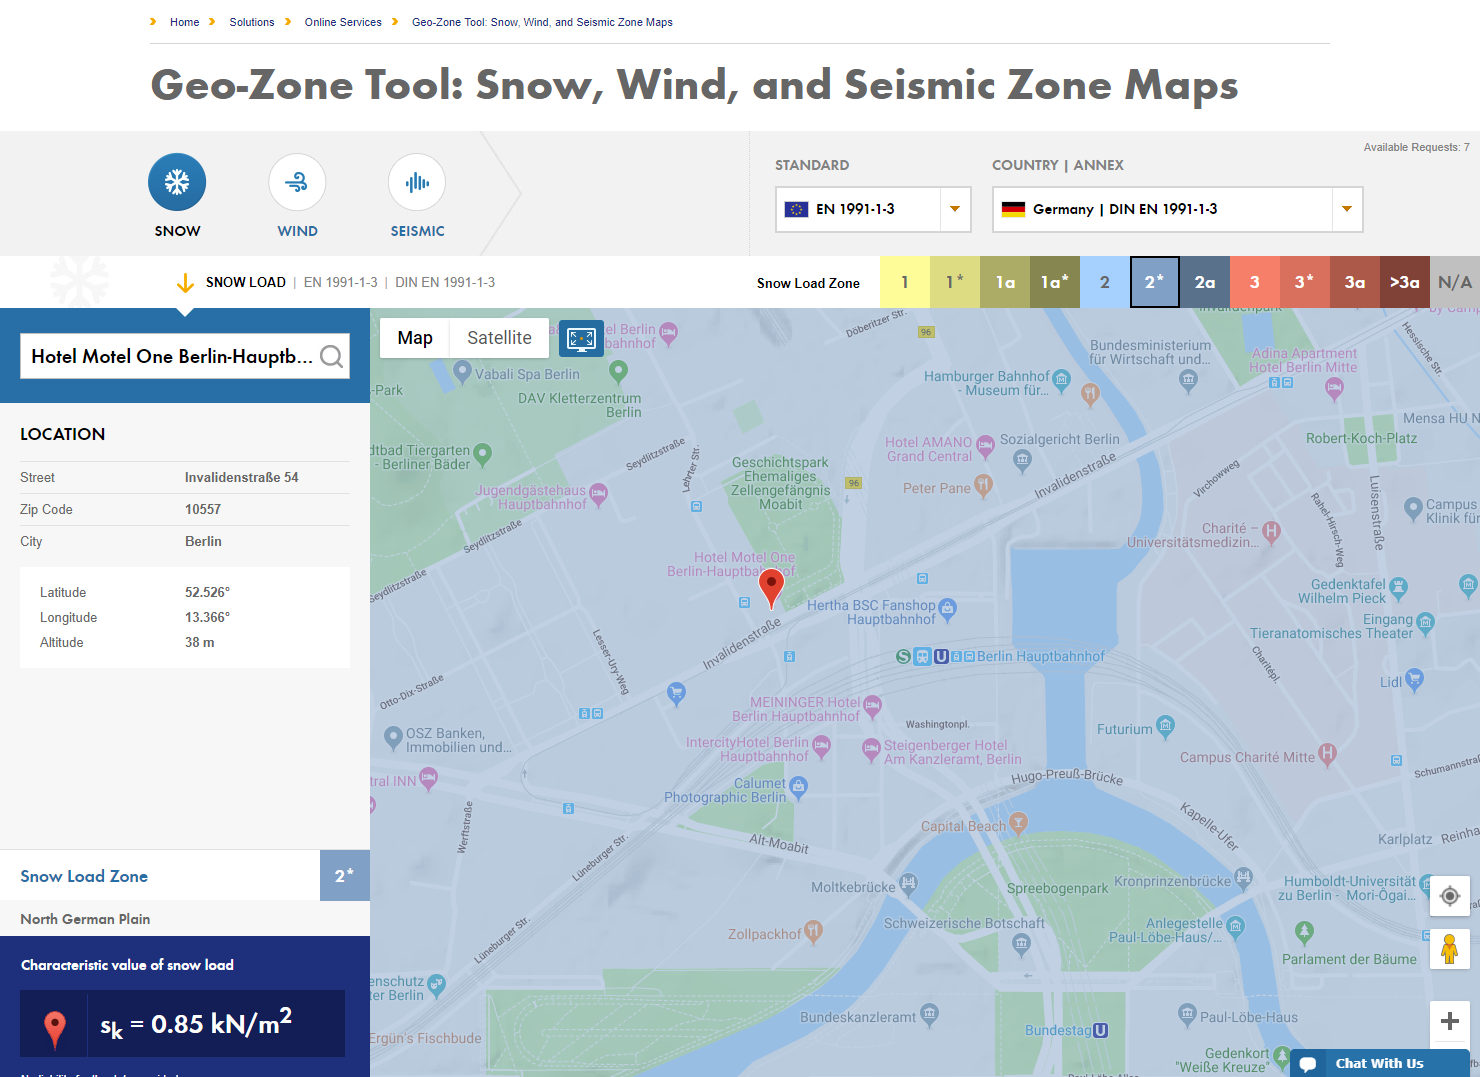 Pesquisa detalhada de localização para determinação da carga de neve característica